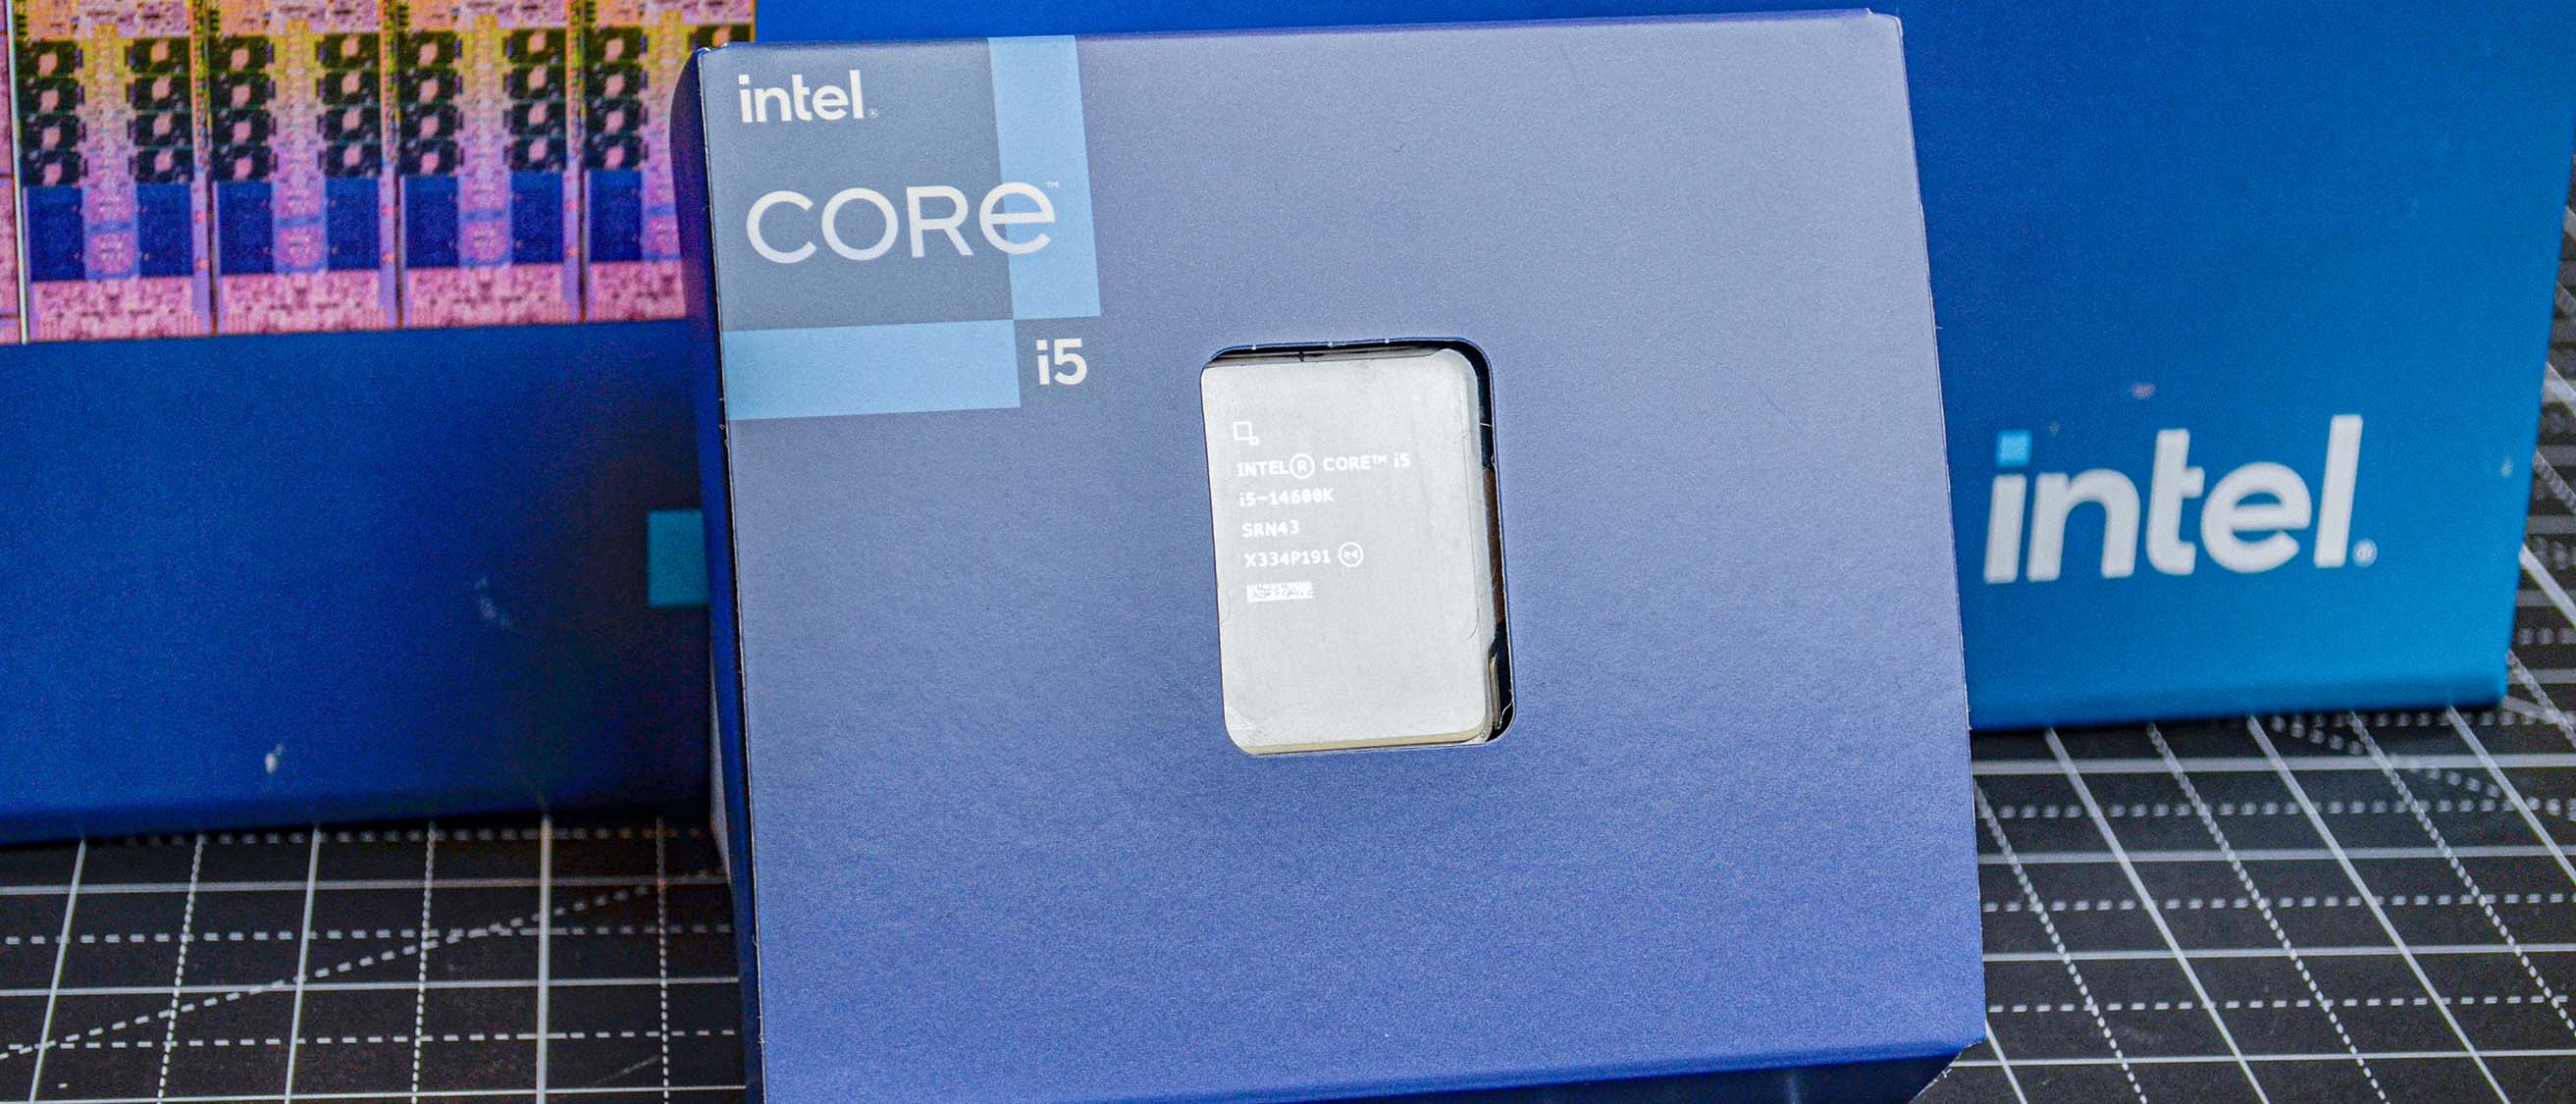  Intel® CoreTM i5-14600K New Gaming Desktop Processor